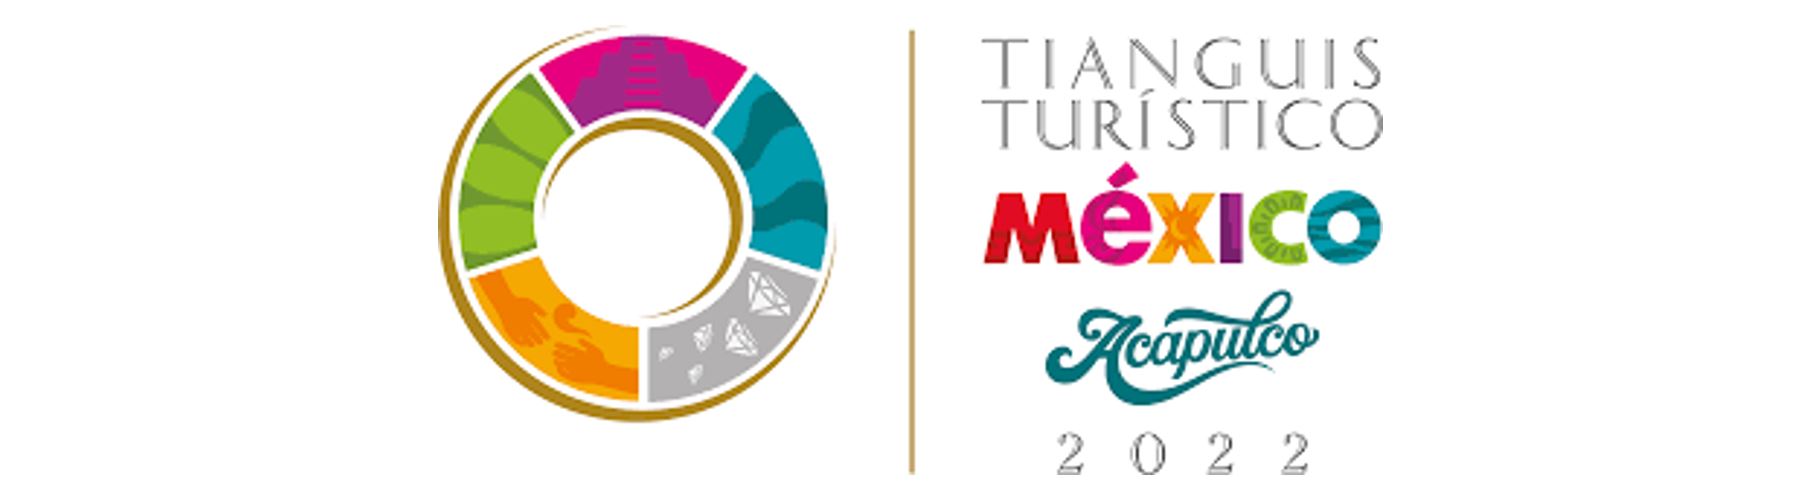 Ponemos rumbo a Tianguis Turístico México 2022